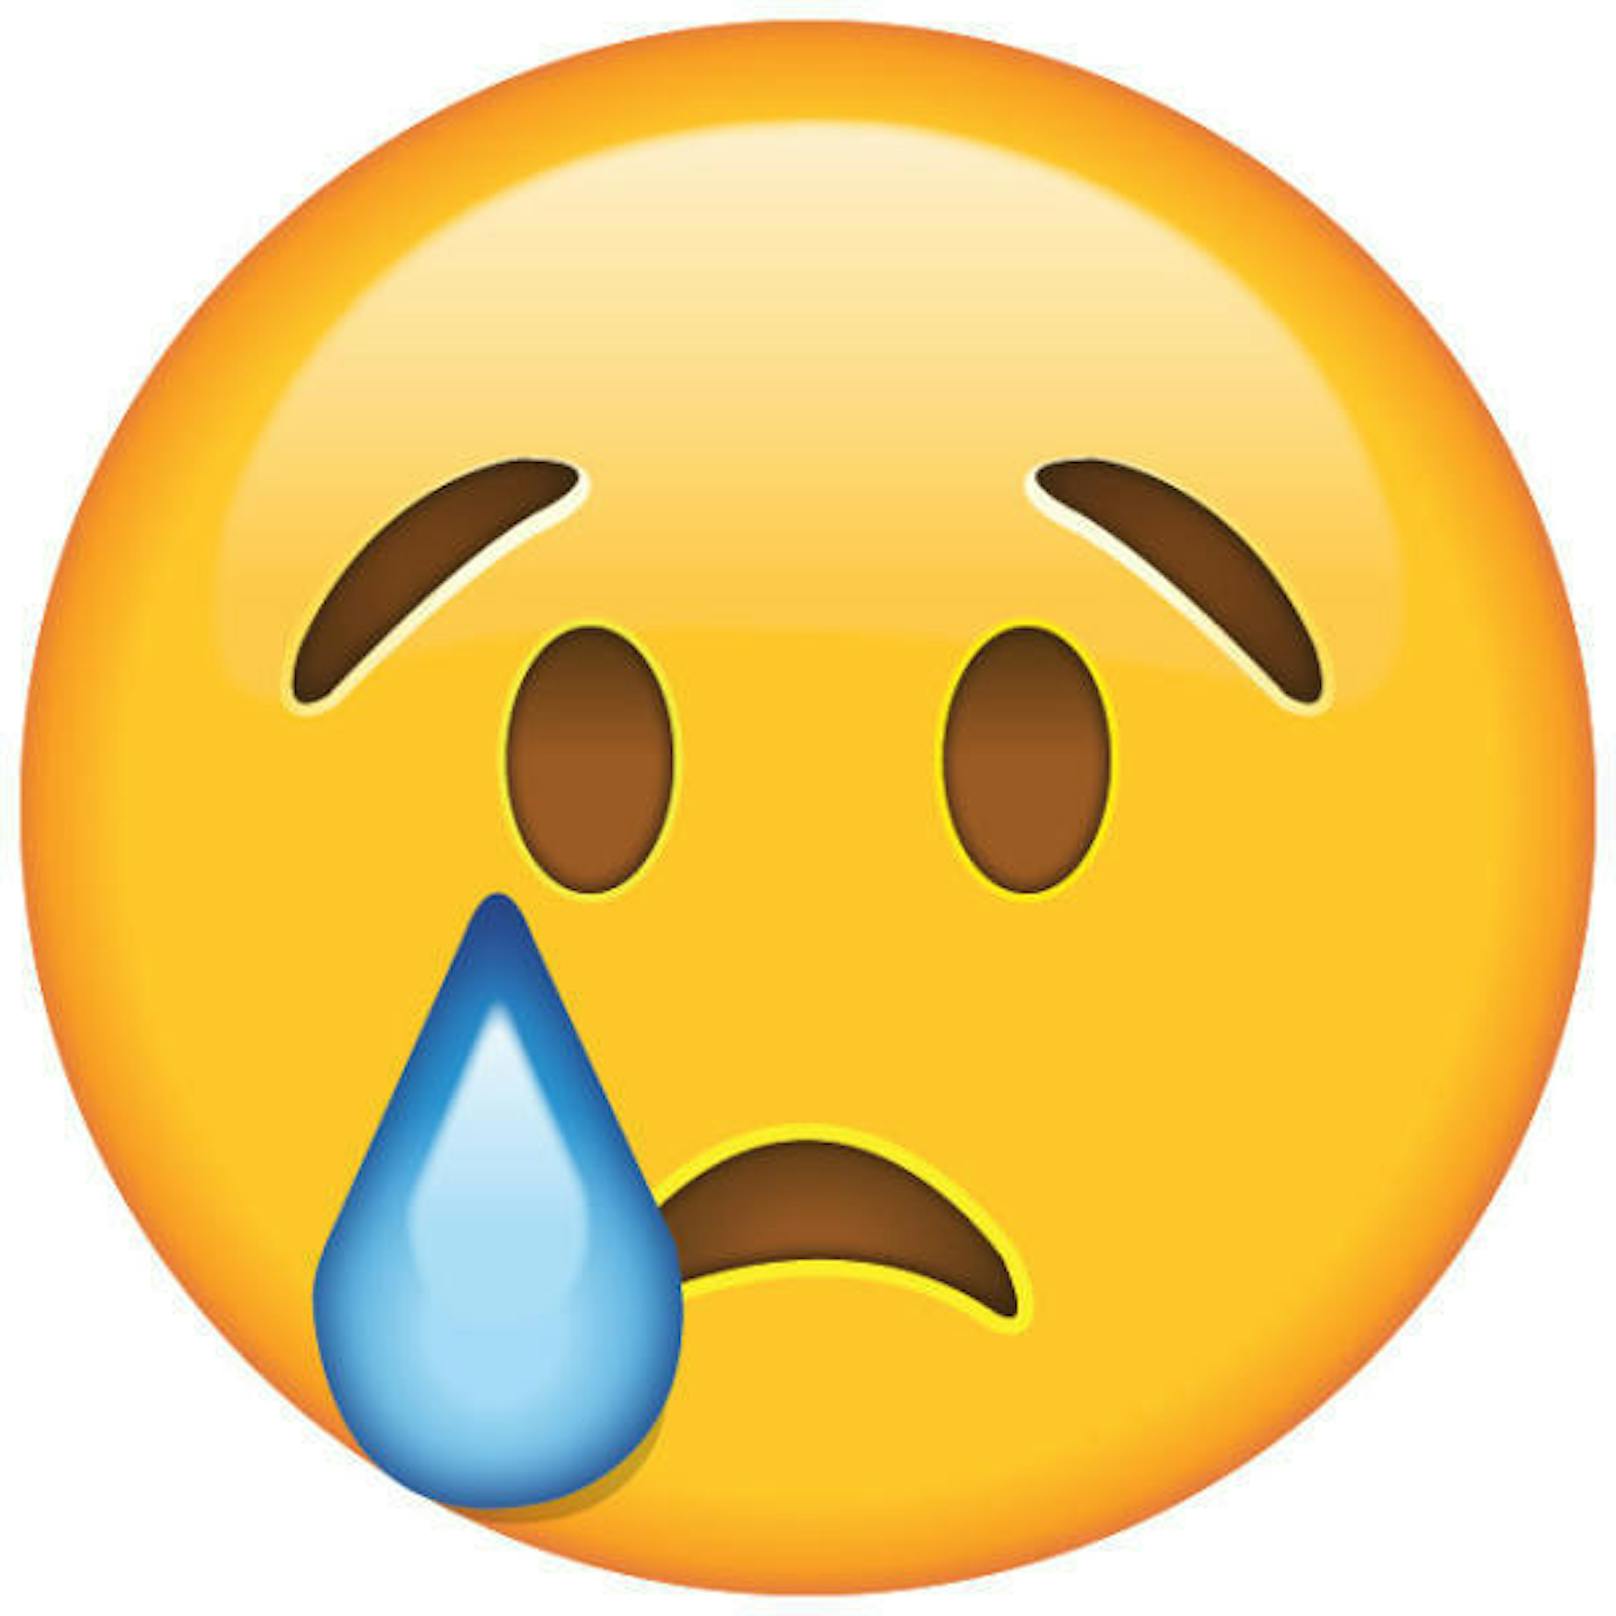 Wer mag schon Heulsusen? Wer traurig und verletzt ist, sollte dennoch die Finger von diesem Emoji lassen.